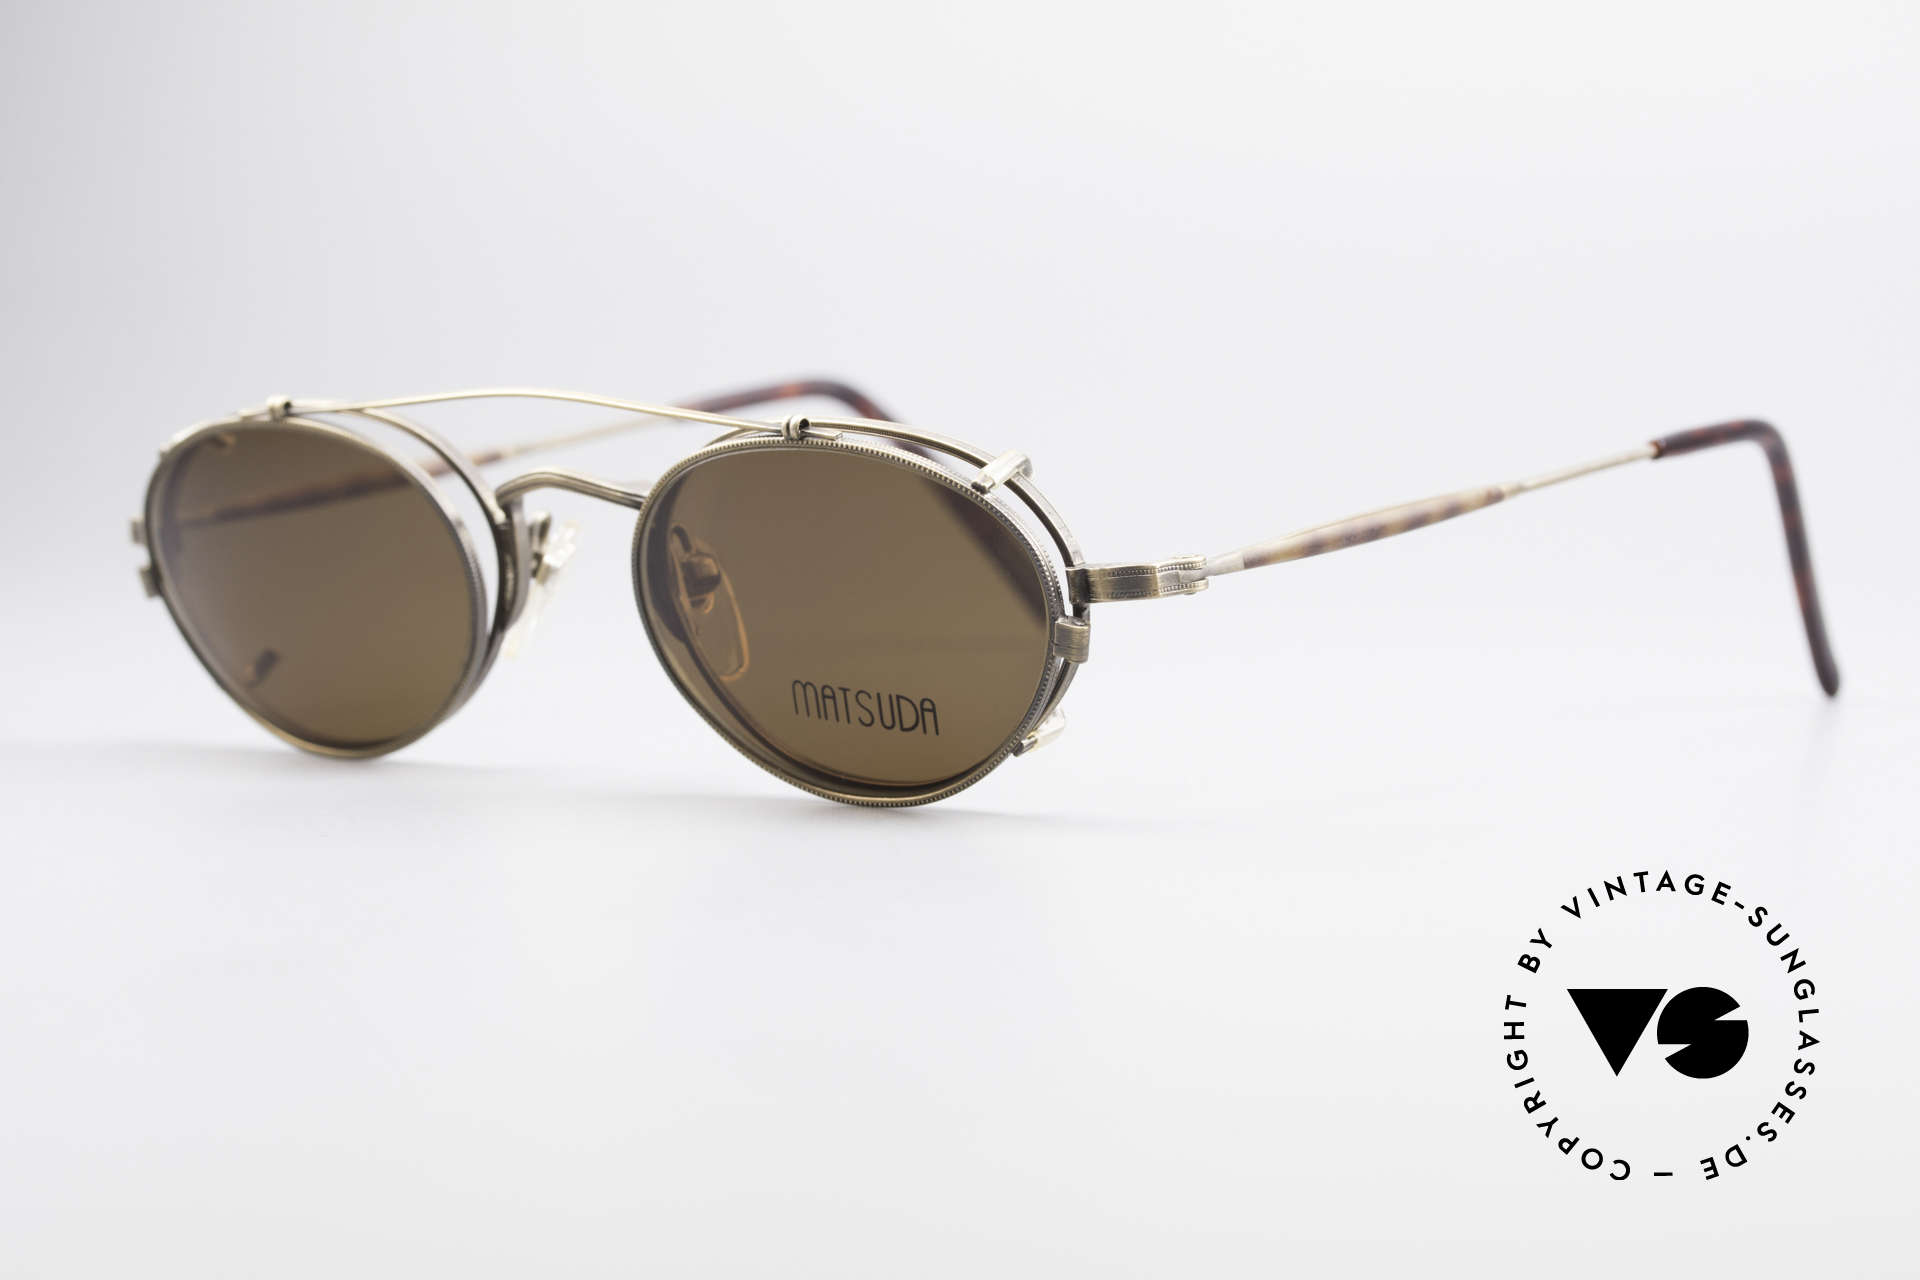 Matsuda 10102 Steampunk Vintage Brille, also einer Sicht auf die Zukunft, aus einer früheren Zeit, Passend für Herren